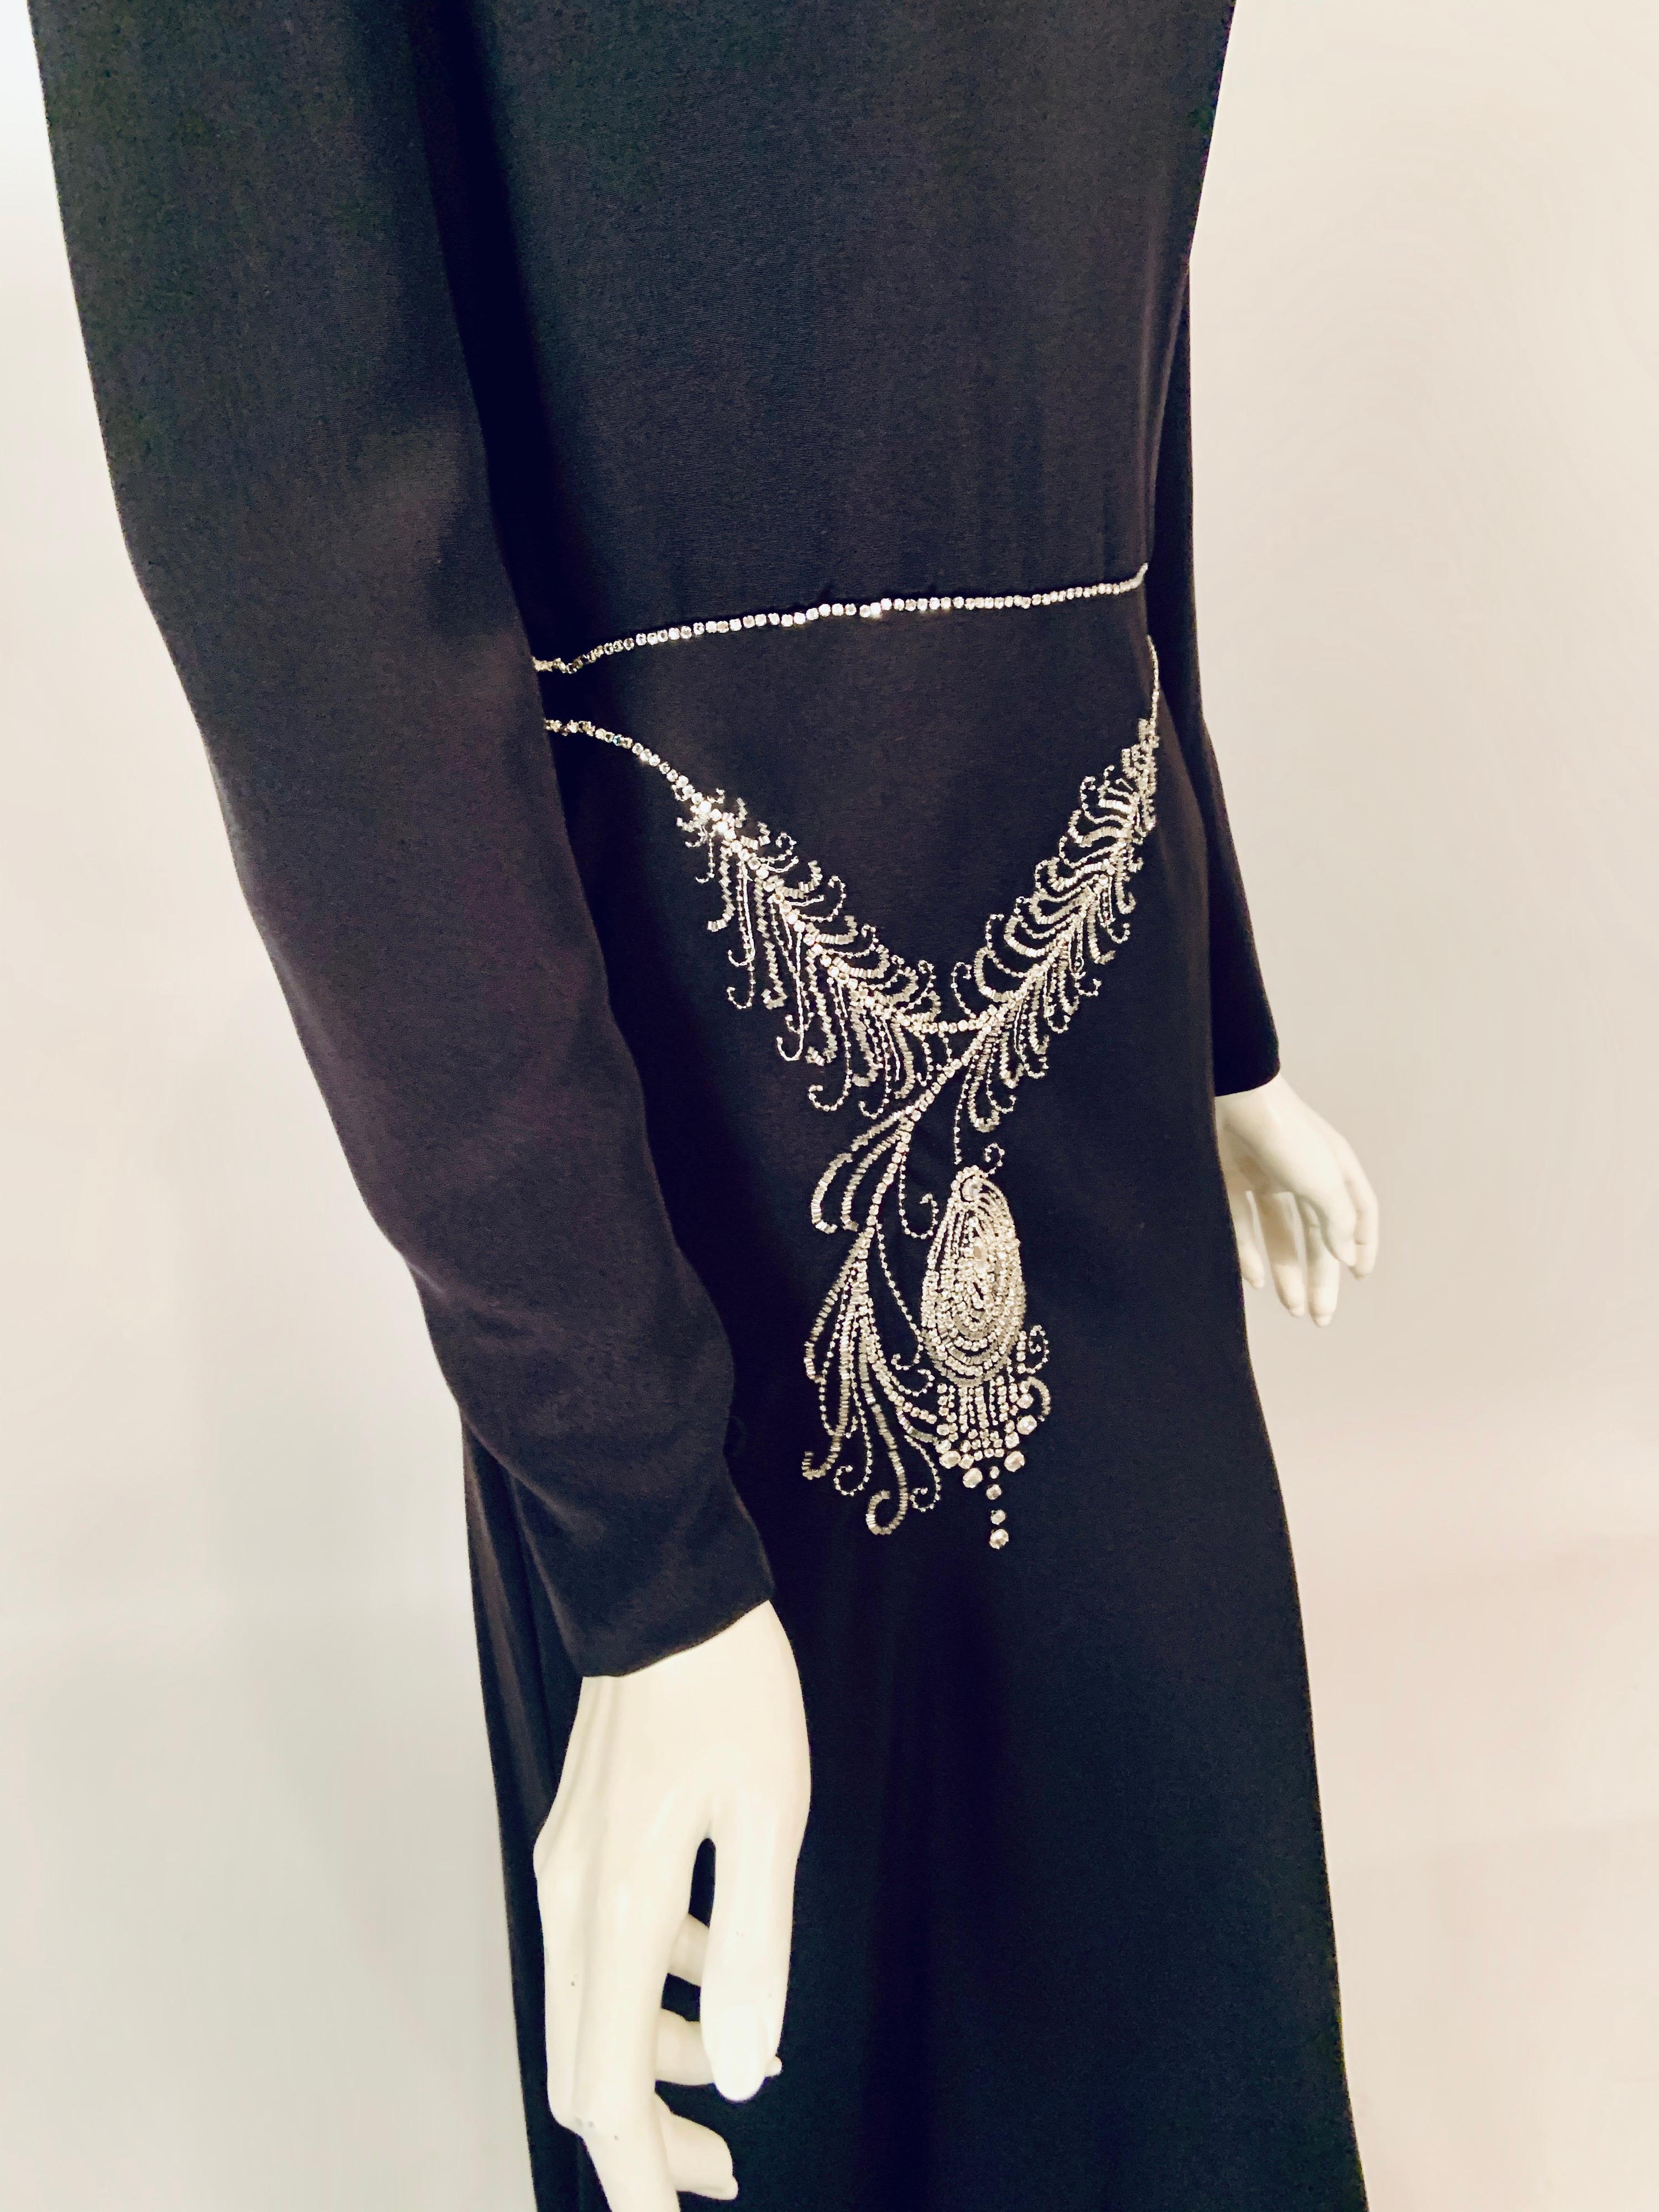 Women's Bill Blass Black Silk Dress with Trompe l'oeil Beaded Belt and Original Tags 